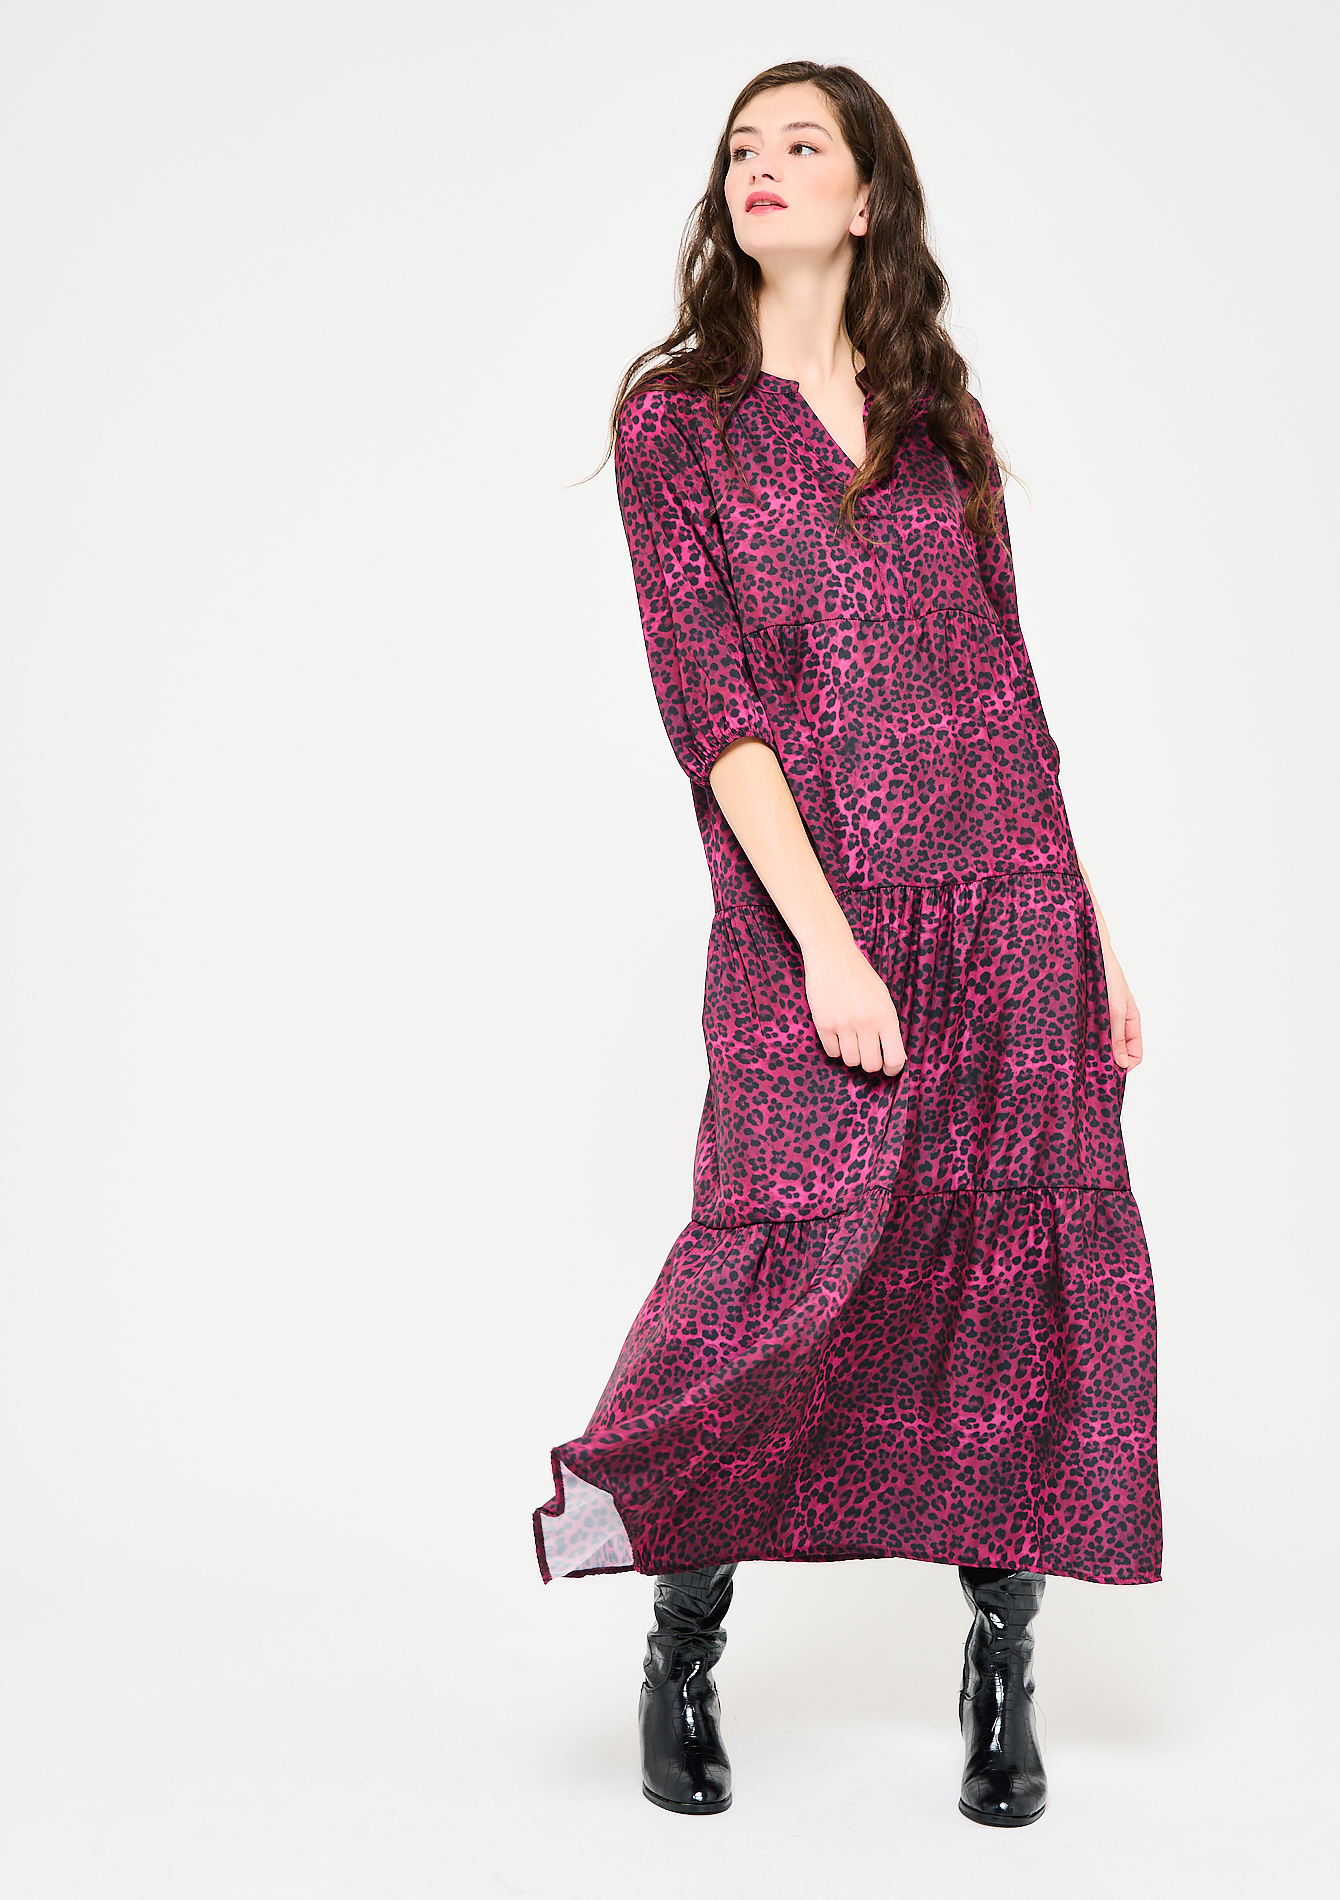 Lange jurk met luipaard print - VIOLINE - 08601460_16